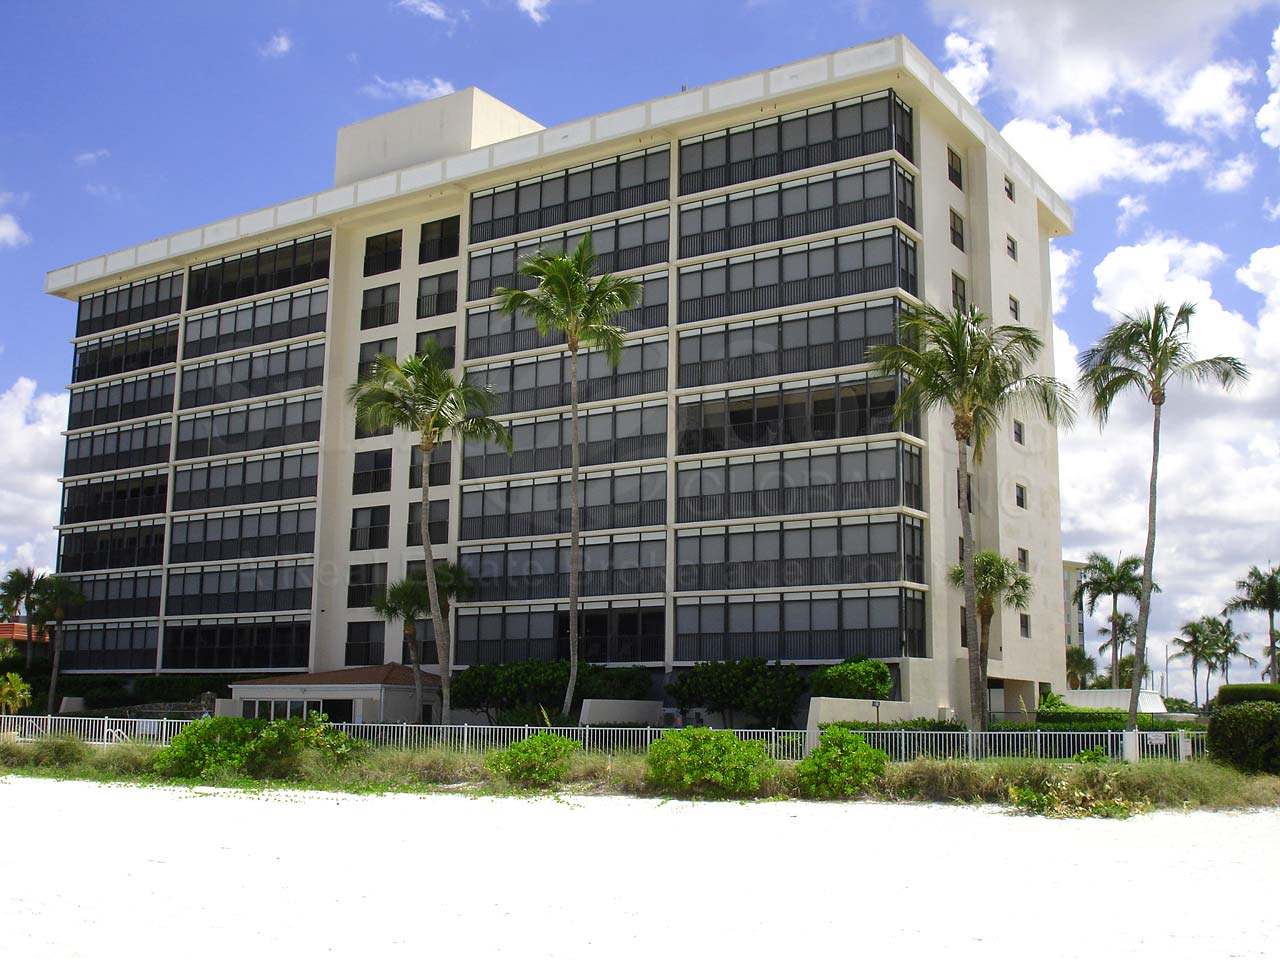 Gulf View Beach Club Condominium Building